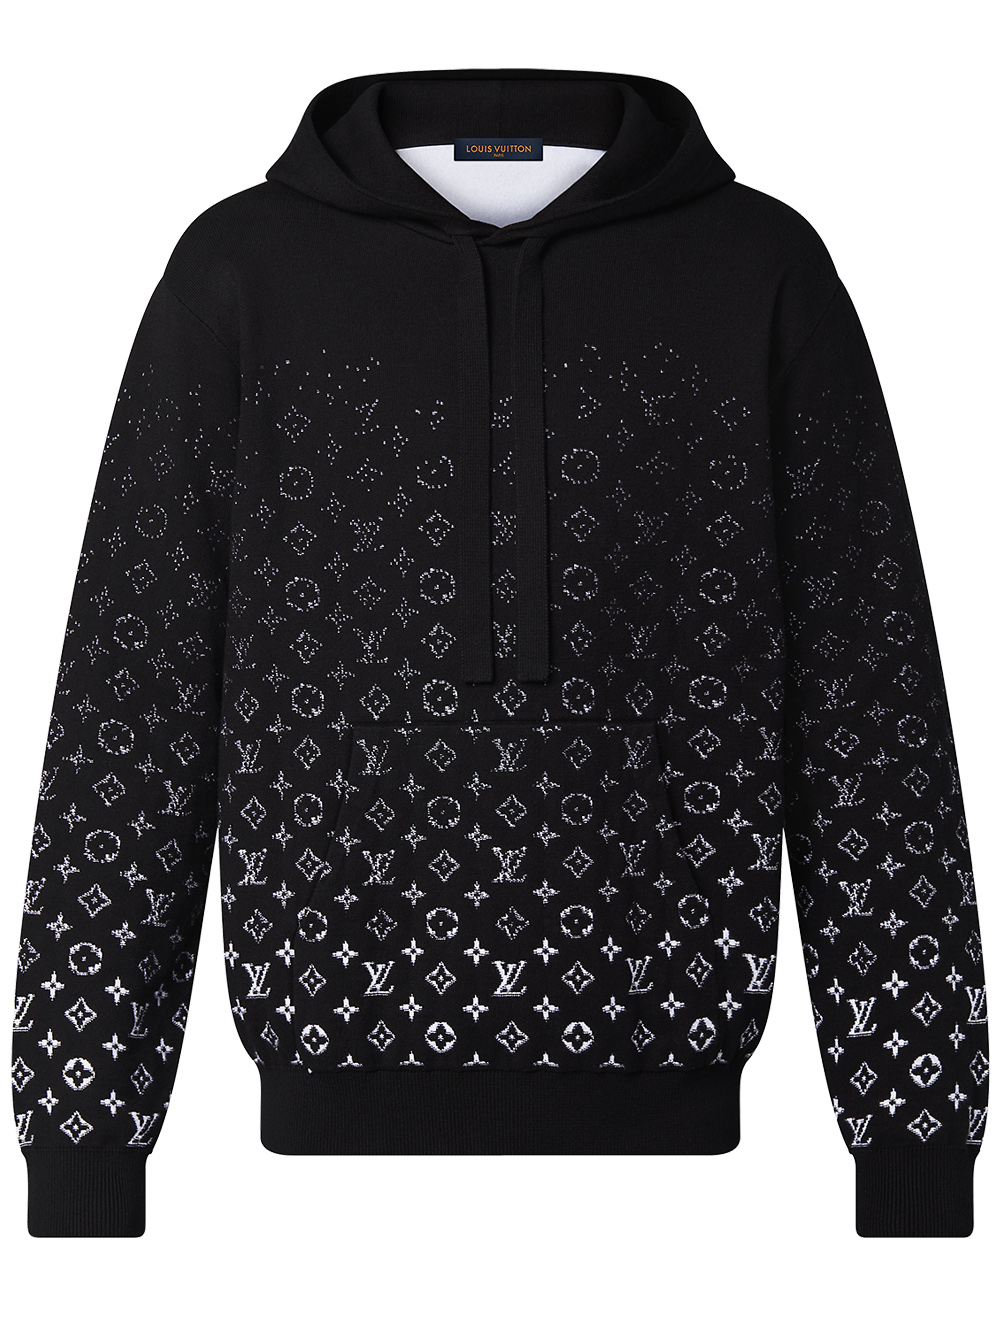 Khám phá với hơn 54 louis vuitton hoodie black and white mới nhất   trieuson5